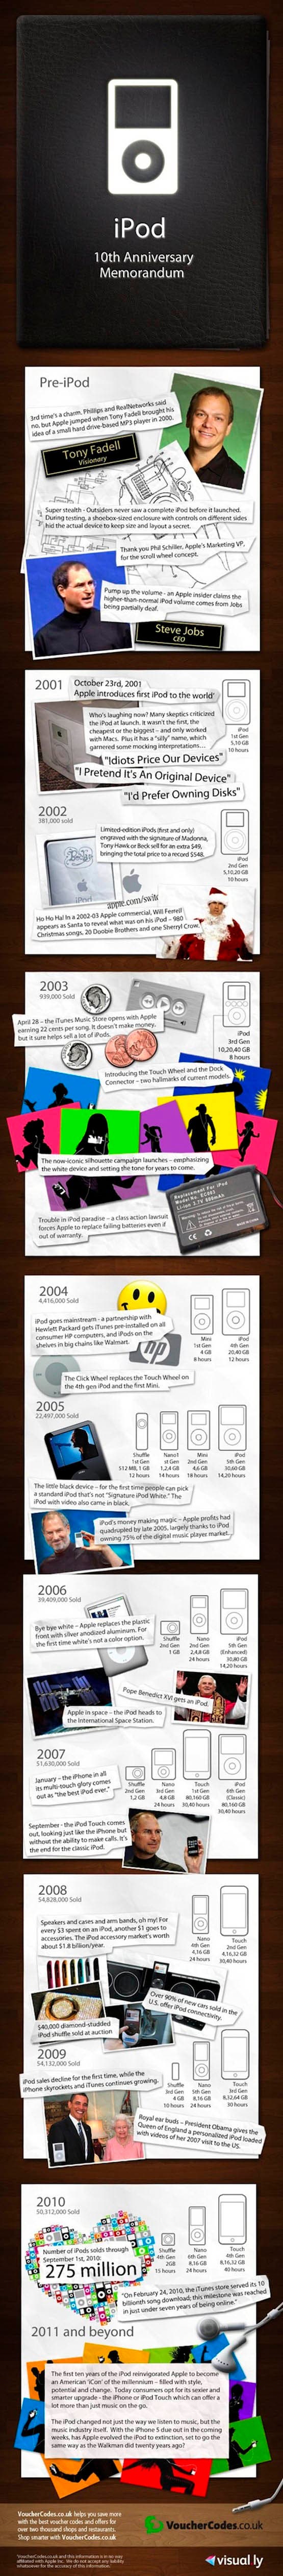 La historia del iPod en una imagen